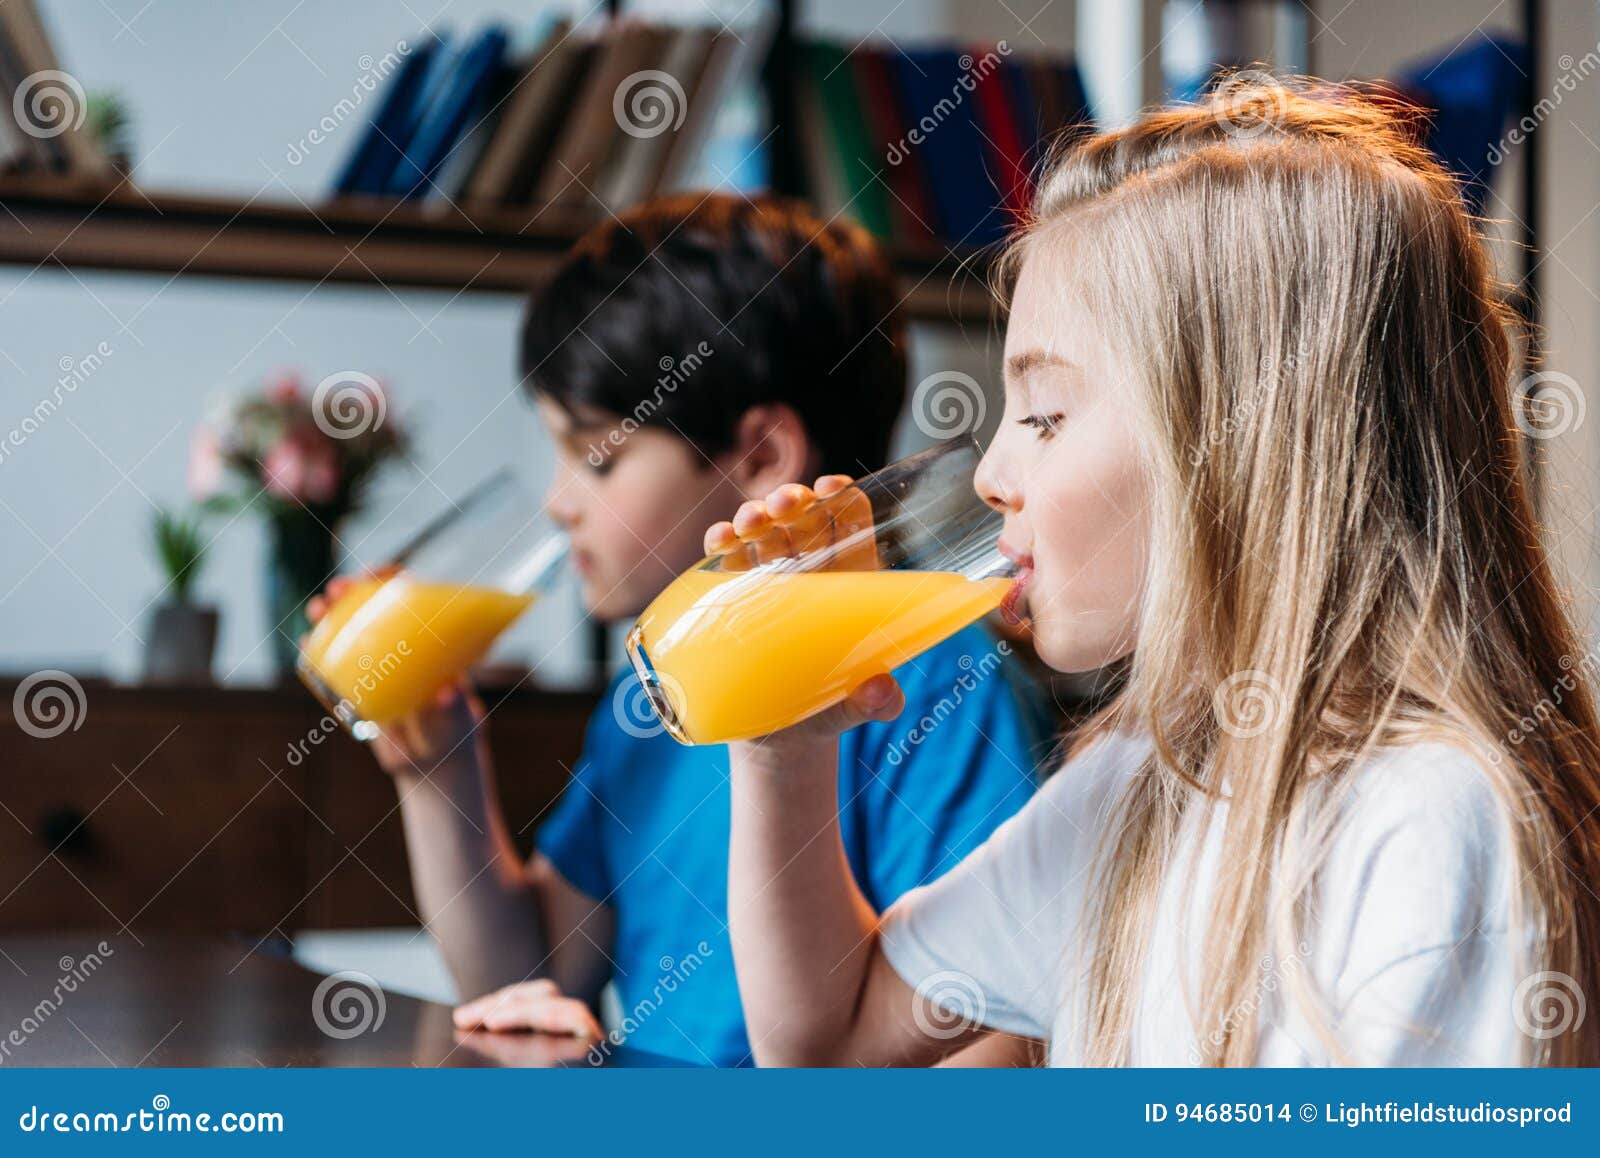 Пьет сок написать. Девочка с соком. Пьет апельсиновый сок. Девочка пьет апельсиновый сок. Девушка с апельсиновым соком.